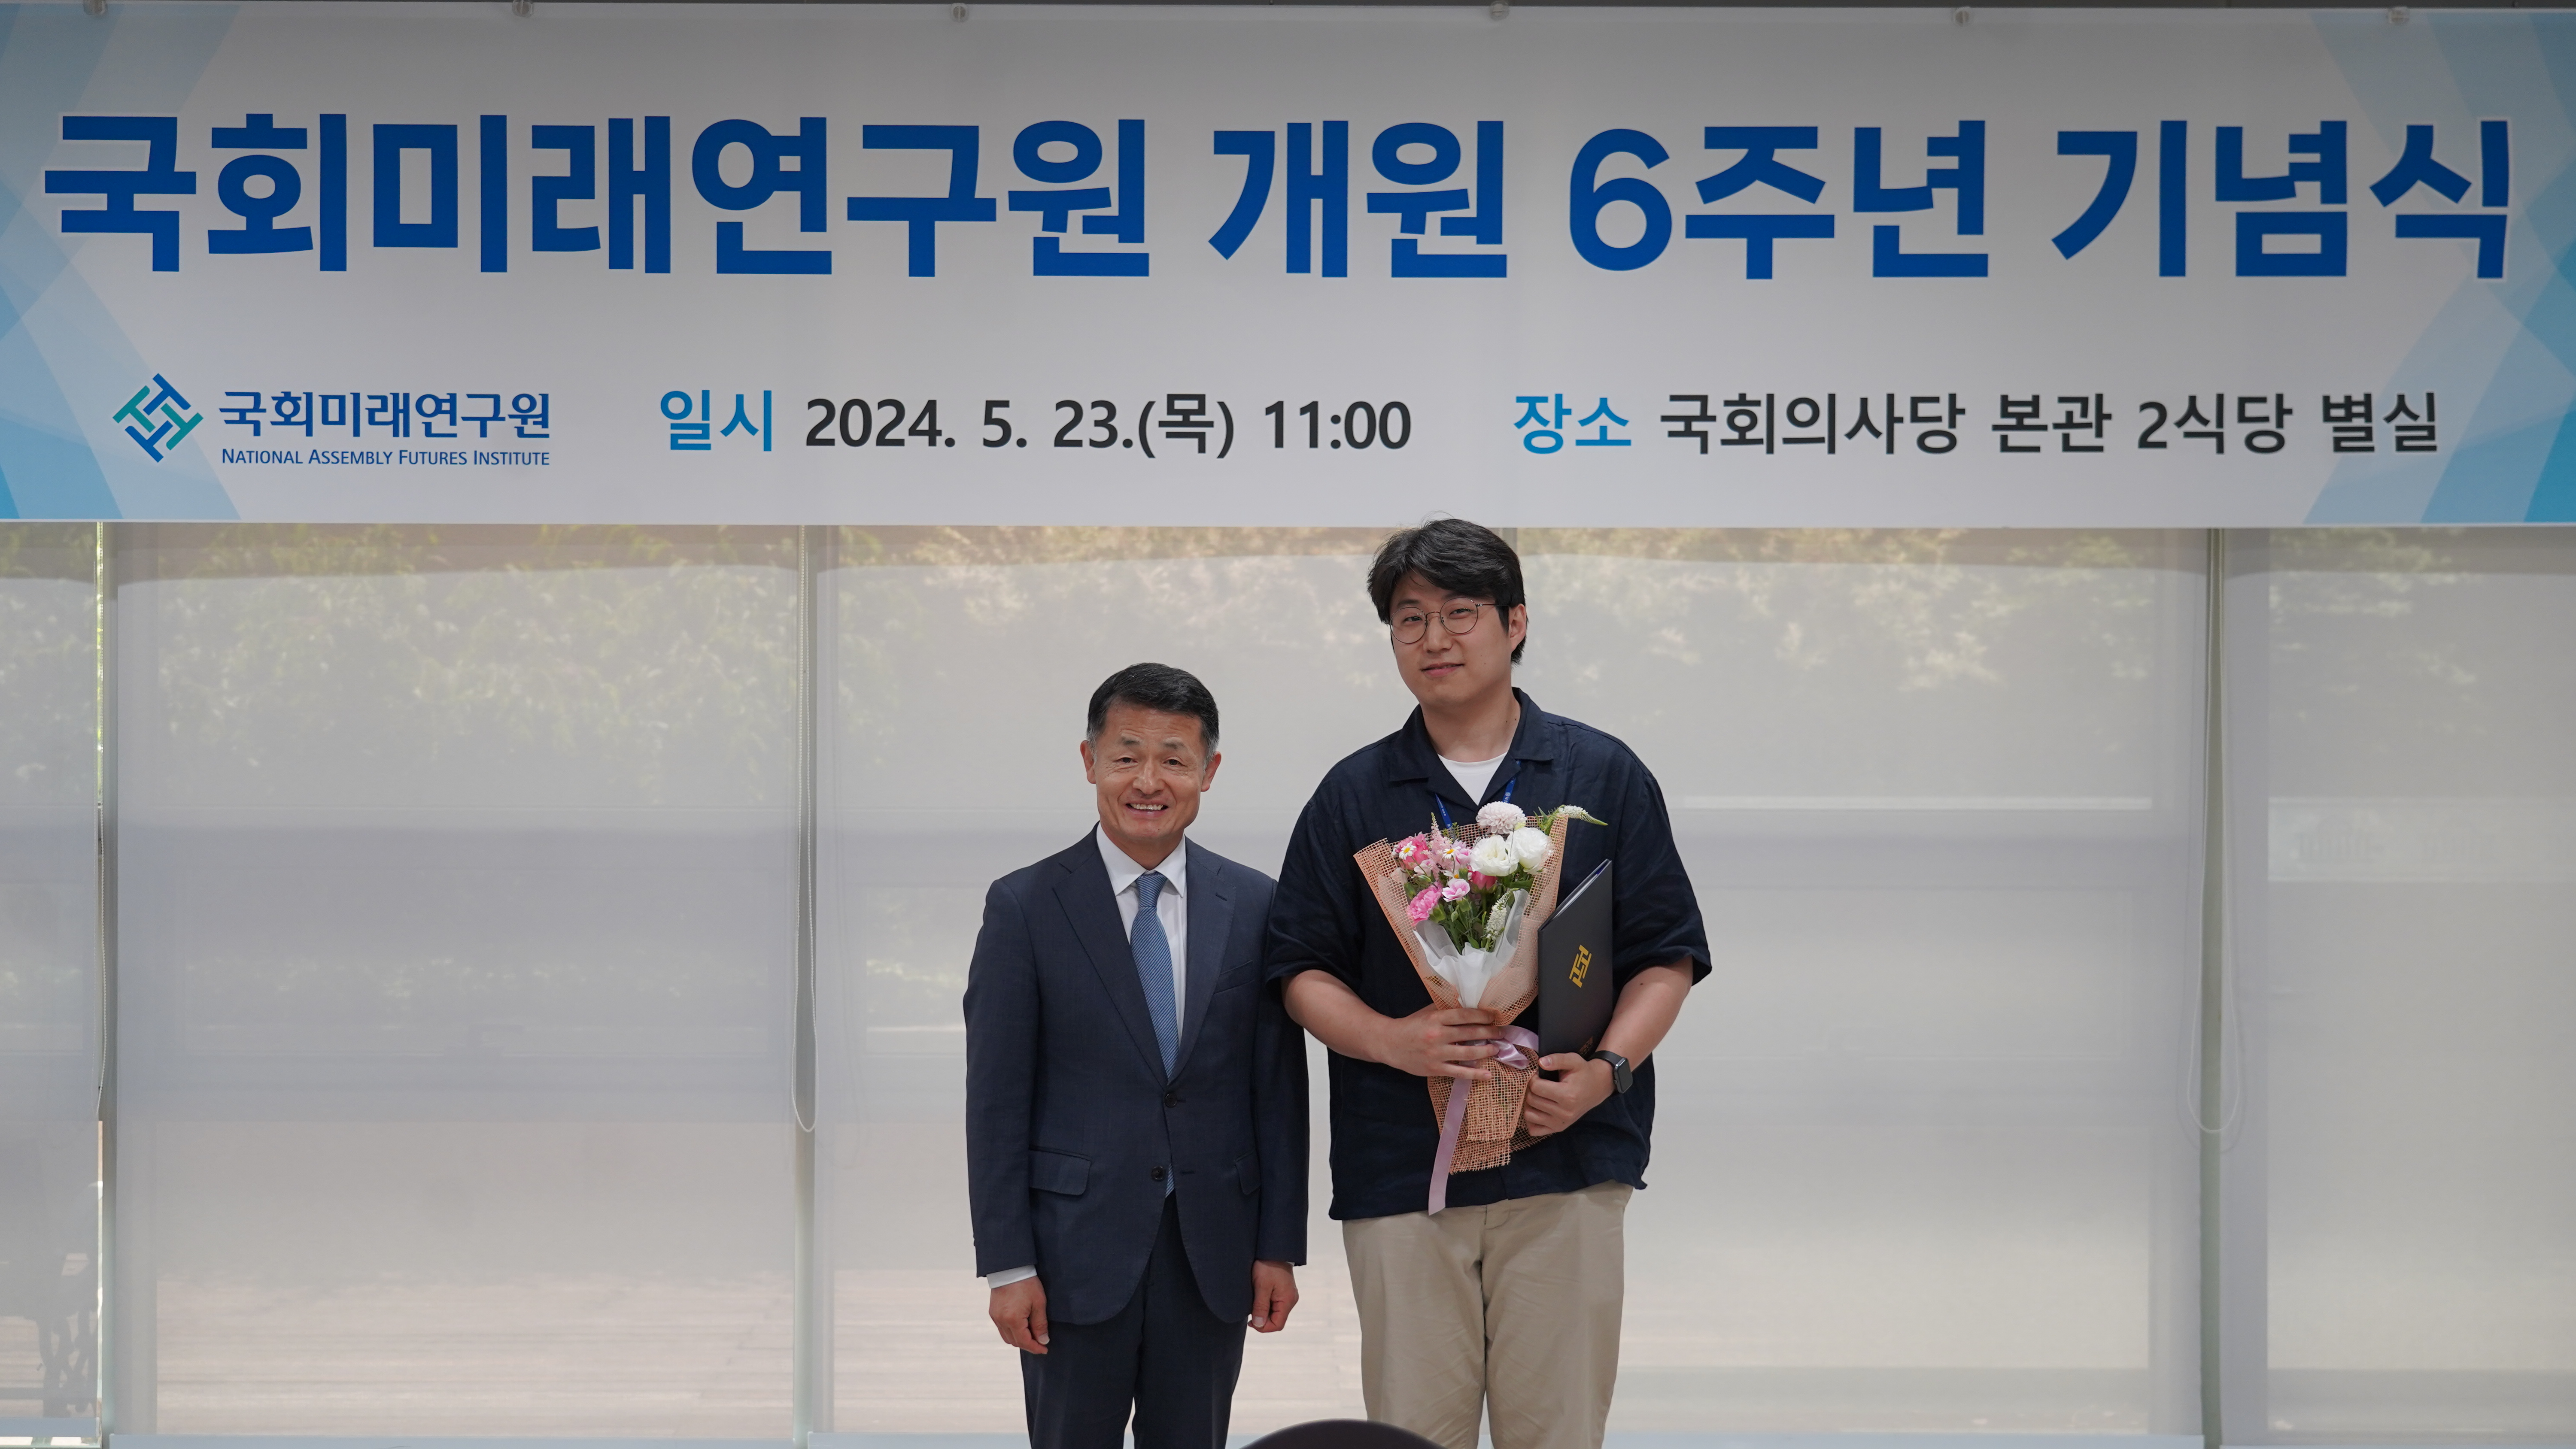 [05.23] 국회미래연구원, 개원 6주년 기념식 개최10